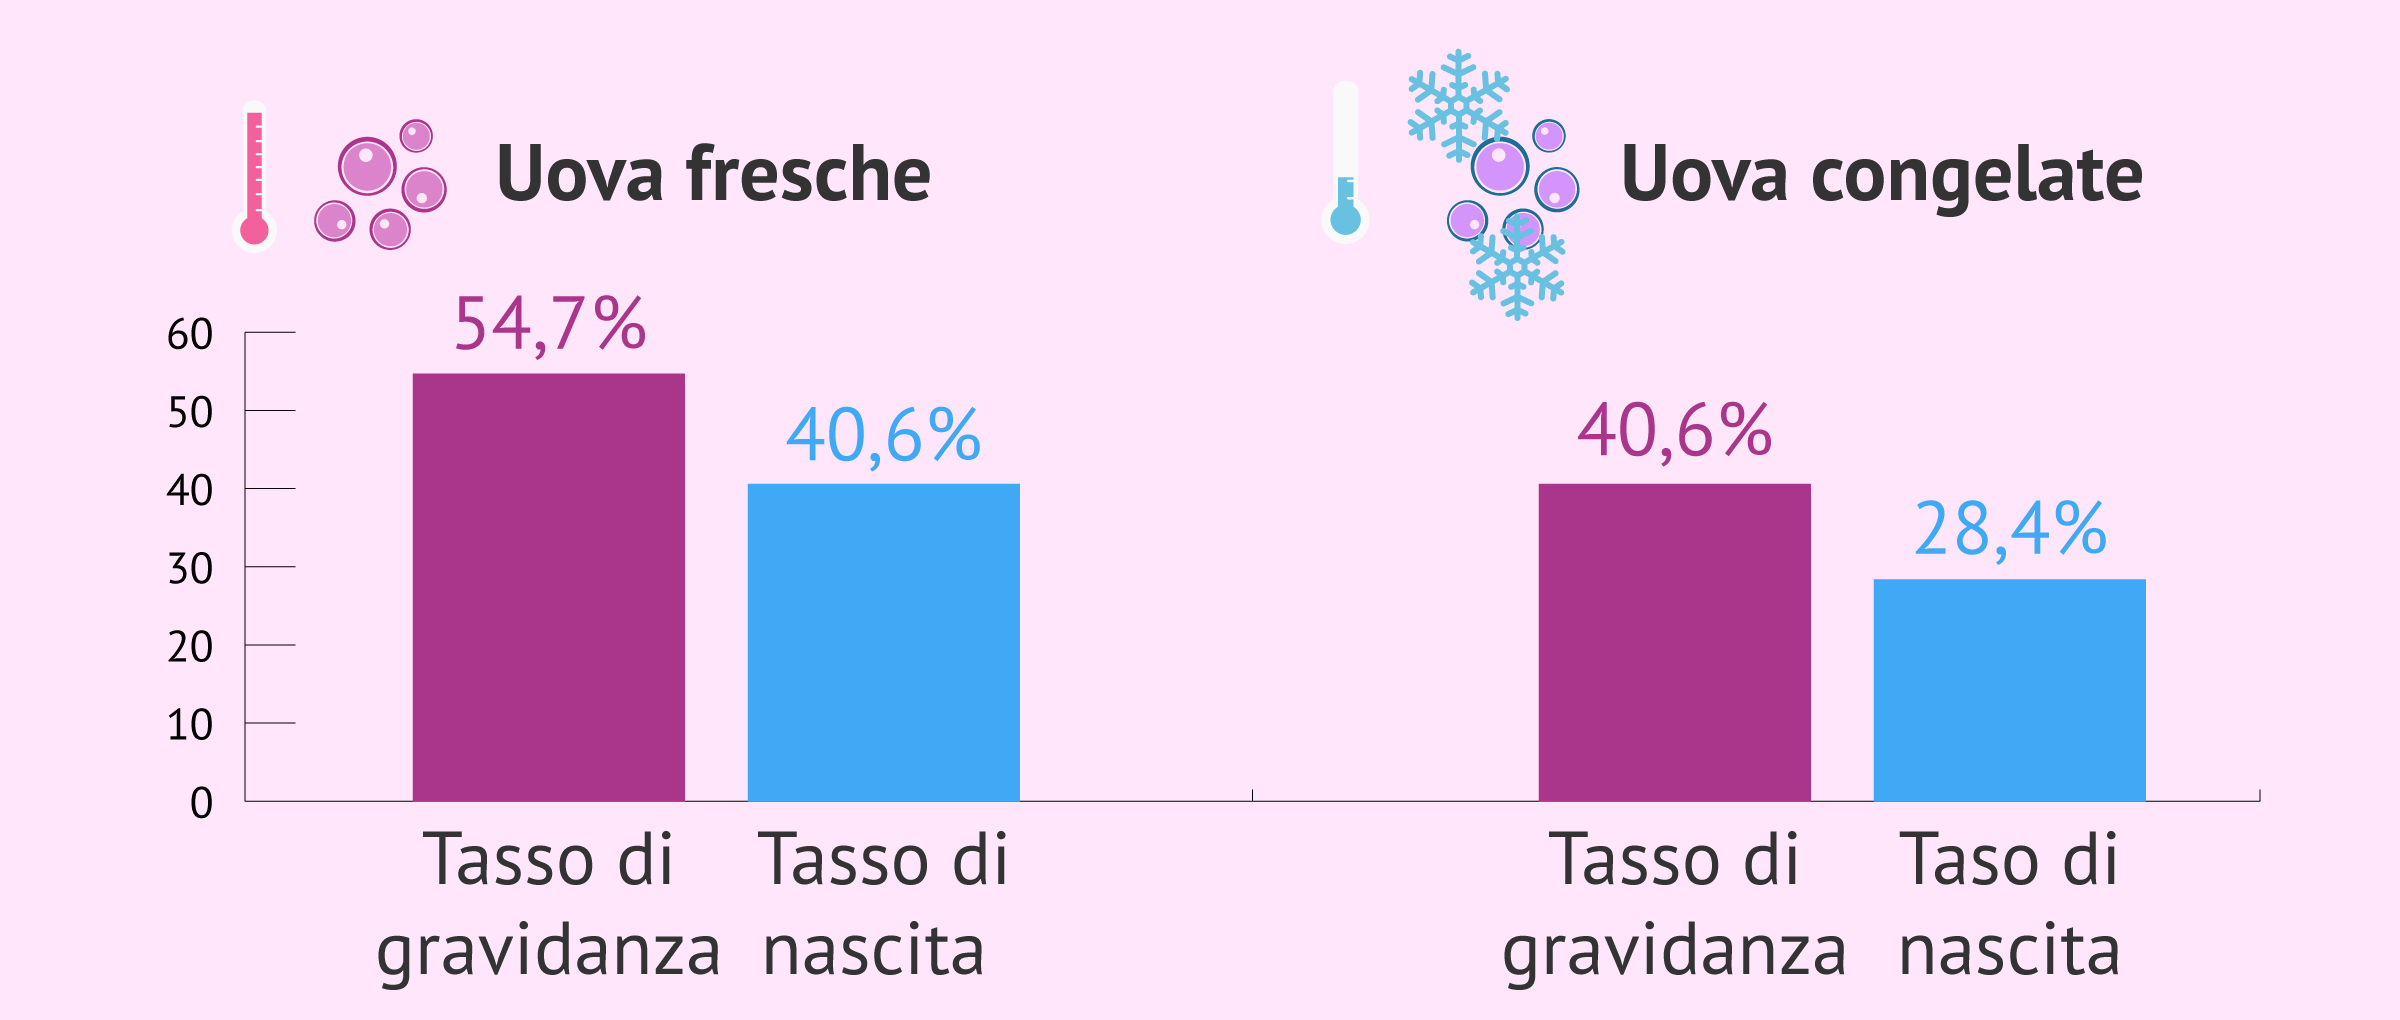 Statistiche sulla donazione di ovuli freschi e congelati